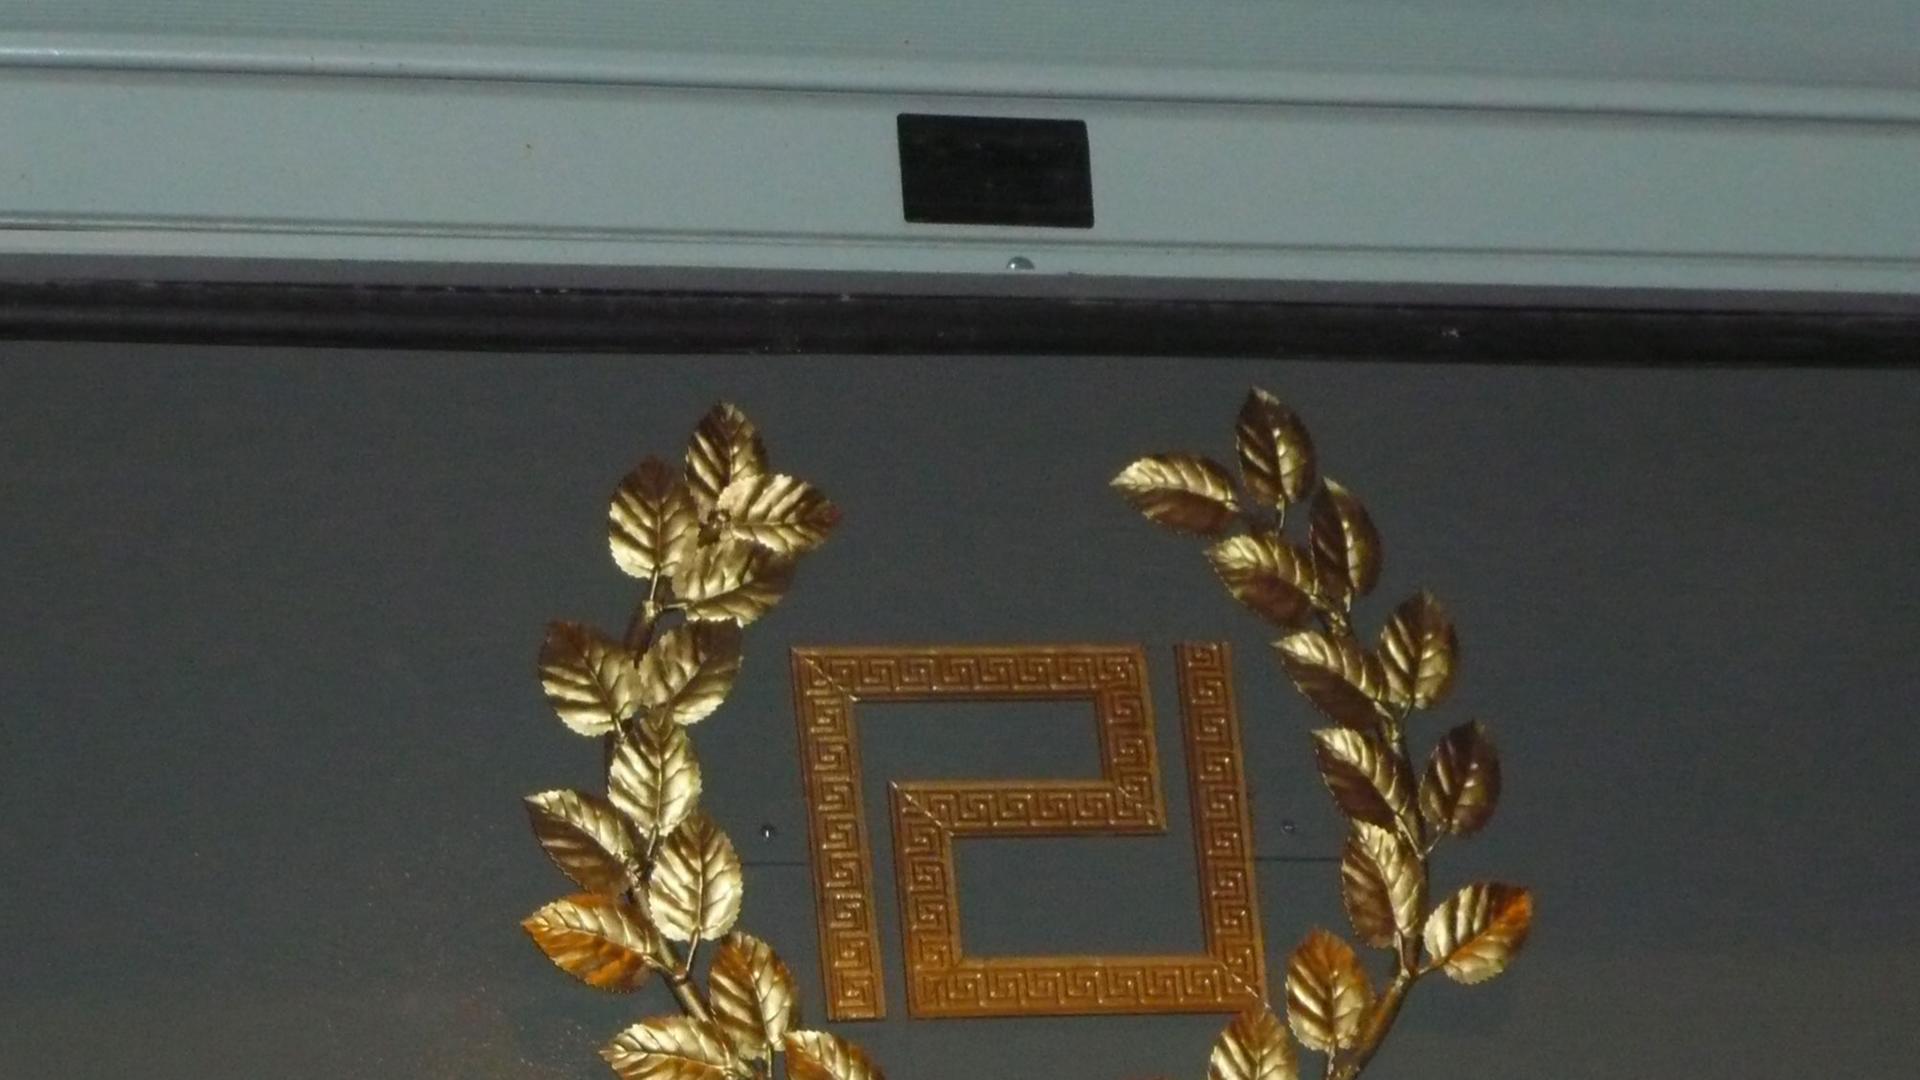 Logo der griechischen Partei "Goldene Morgenröte" über der Eingangstür des Büros in Athen